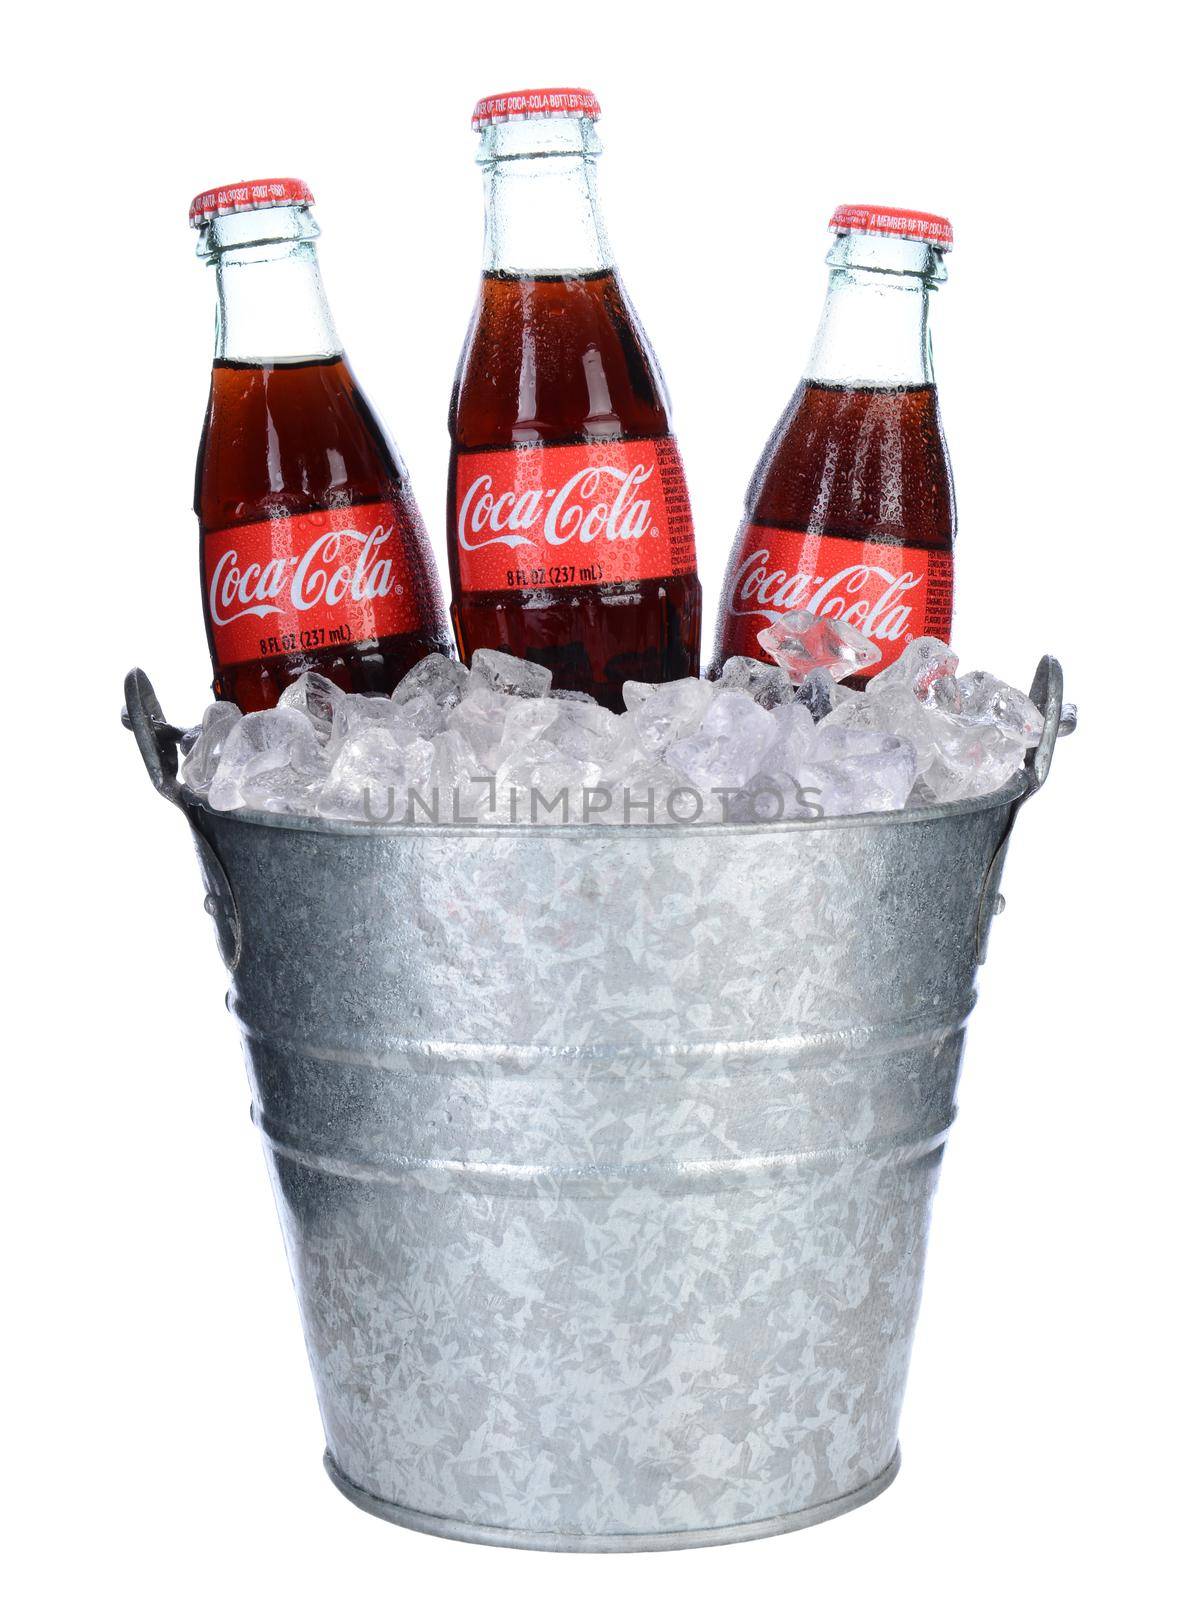 Coca-Cola Bottles in Ice Bucket by sCukrov